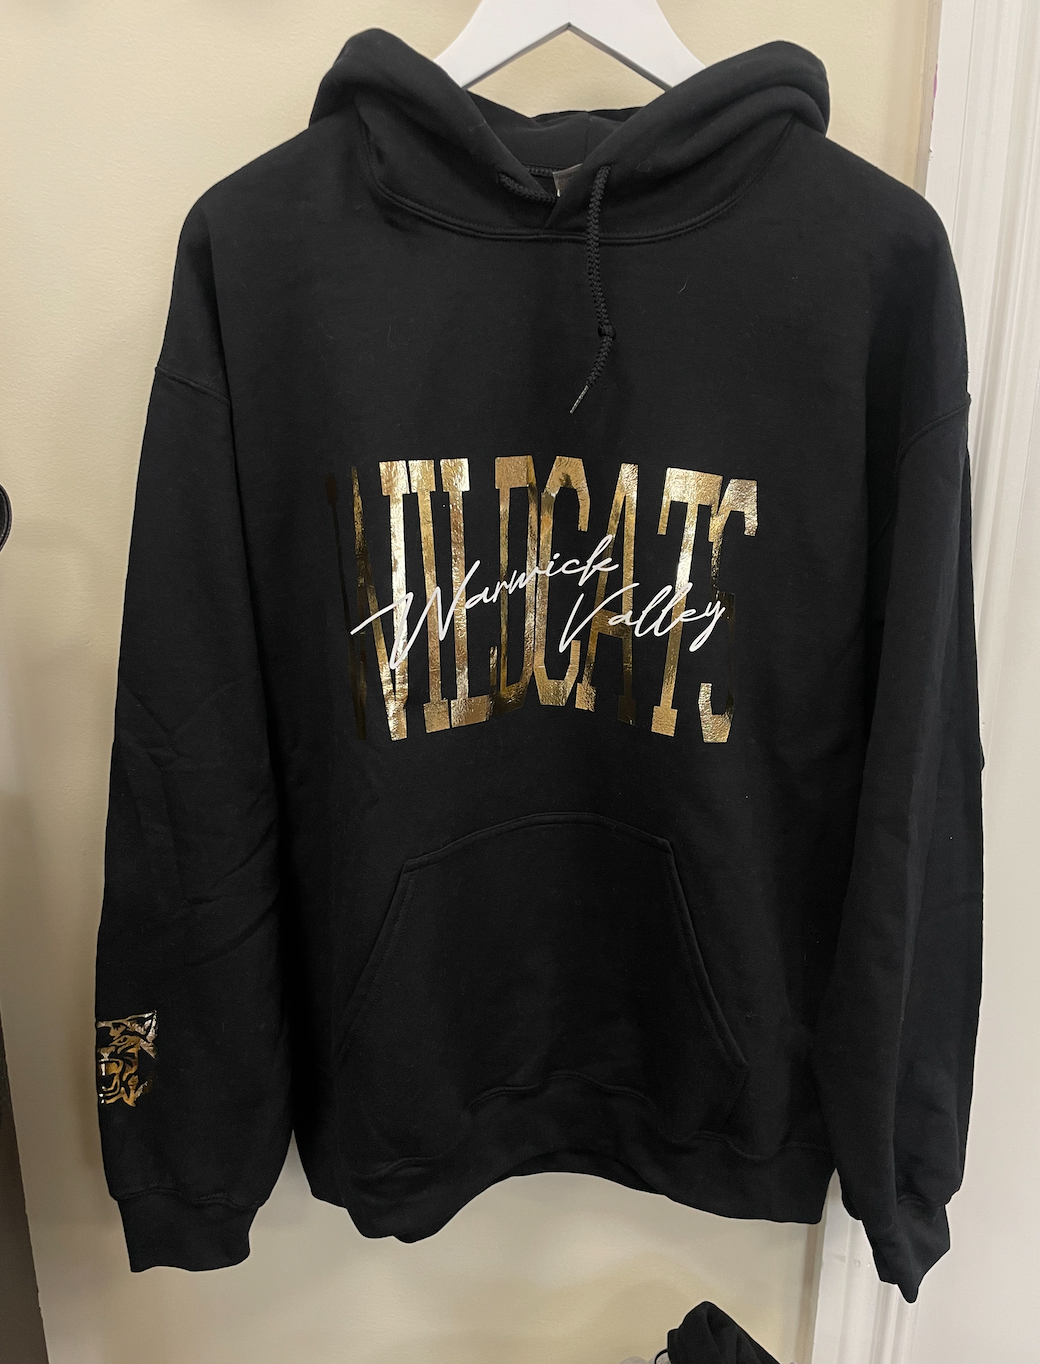 Warwick valley wildcats hoodie black & gold